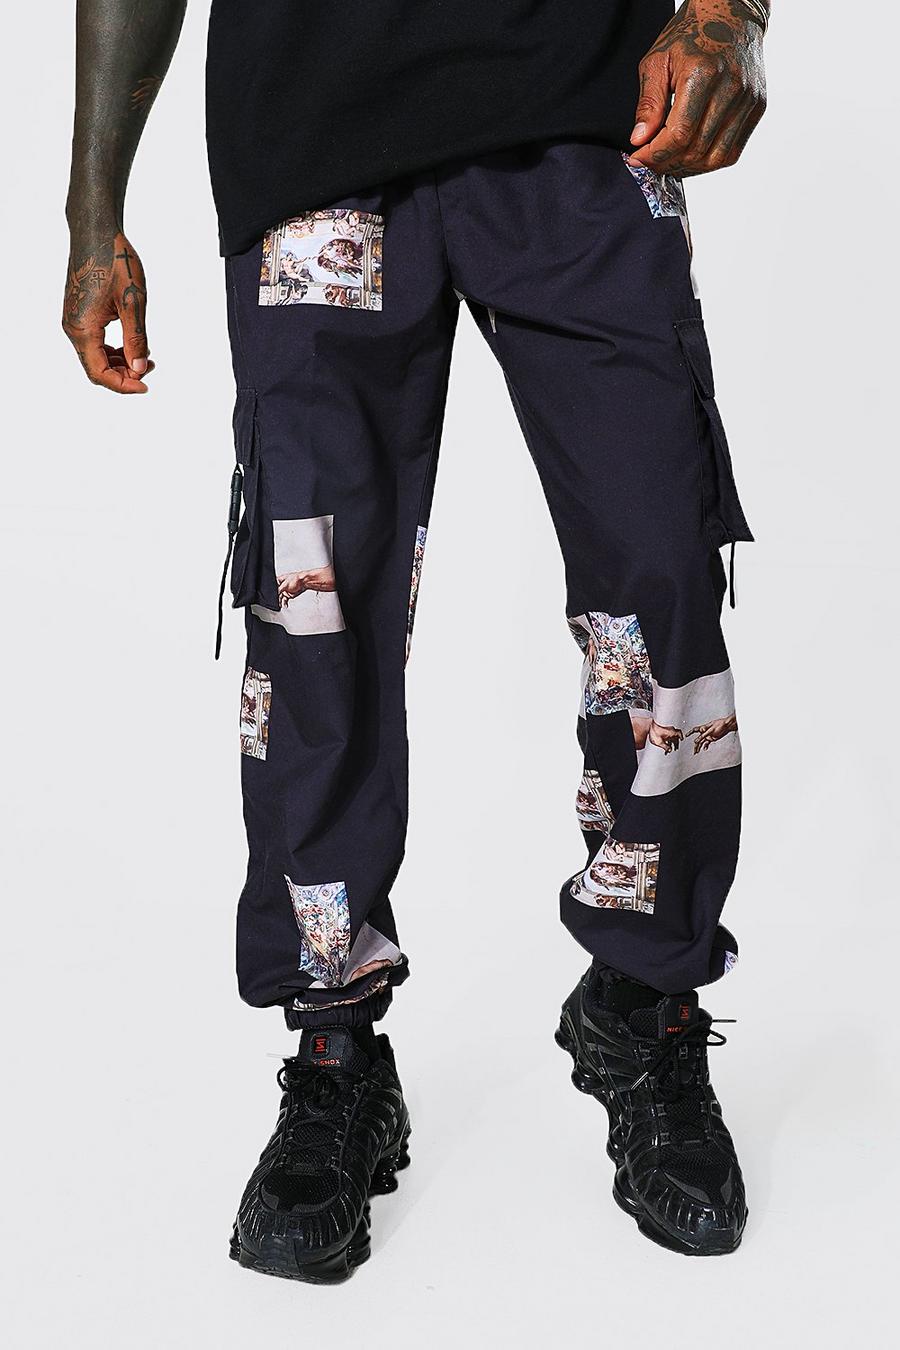 שחור מכנסי דגמ"ח עם שכבת בד פנימית עם הדפס בסגנון רנסנס וכיתוב Official Man image number 1